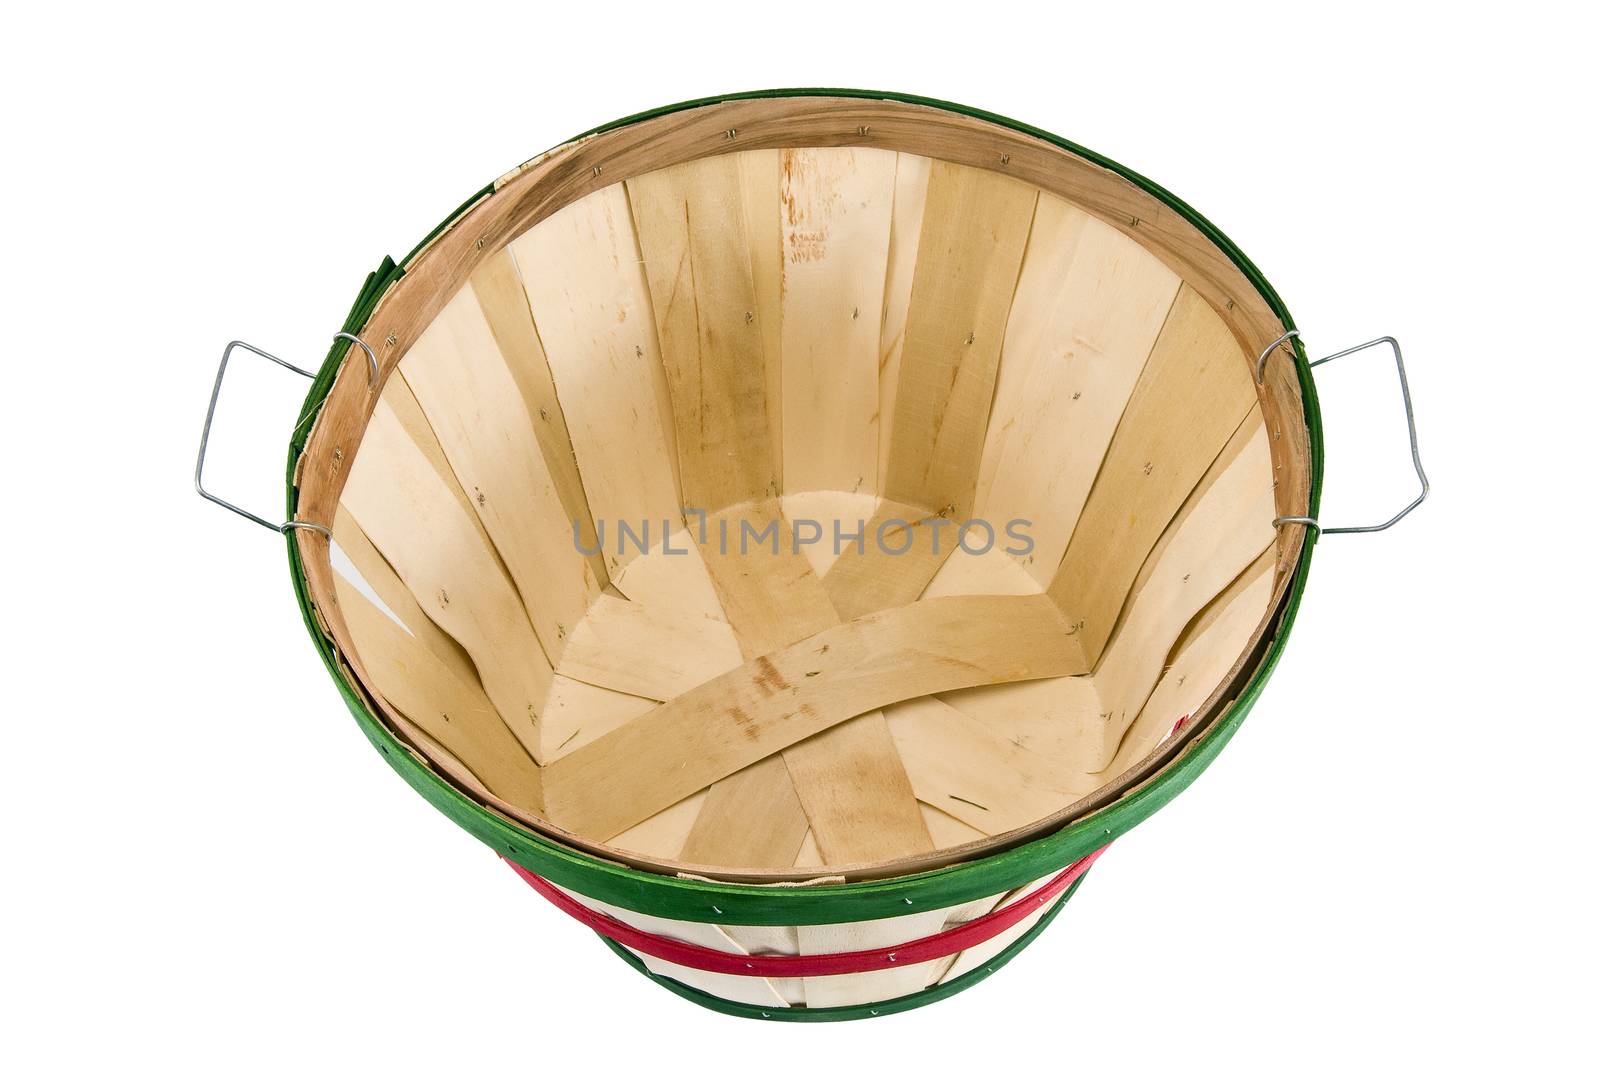 Empty Bushel Basket Shot On Angle by stockbuster1